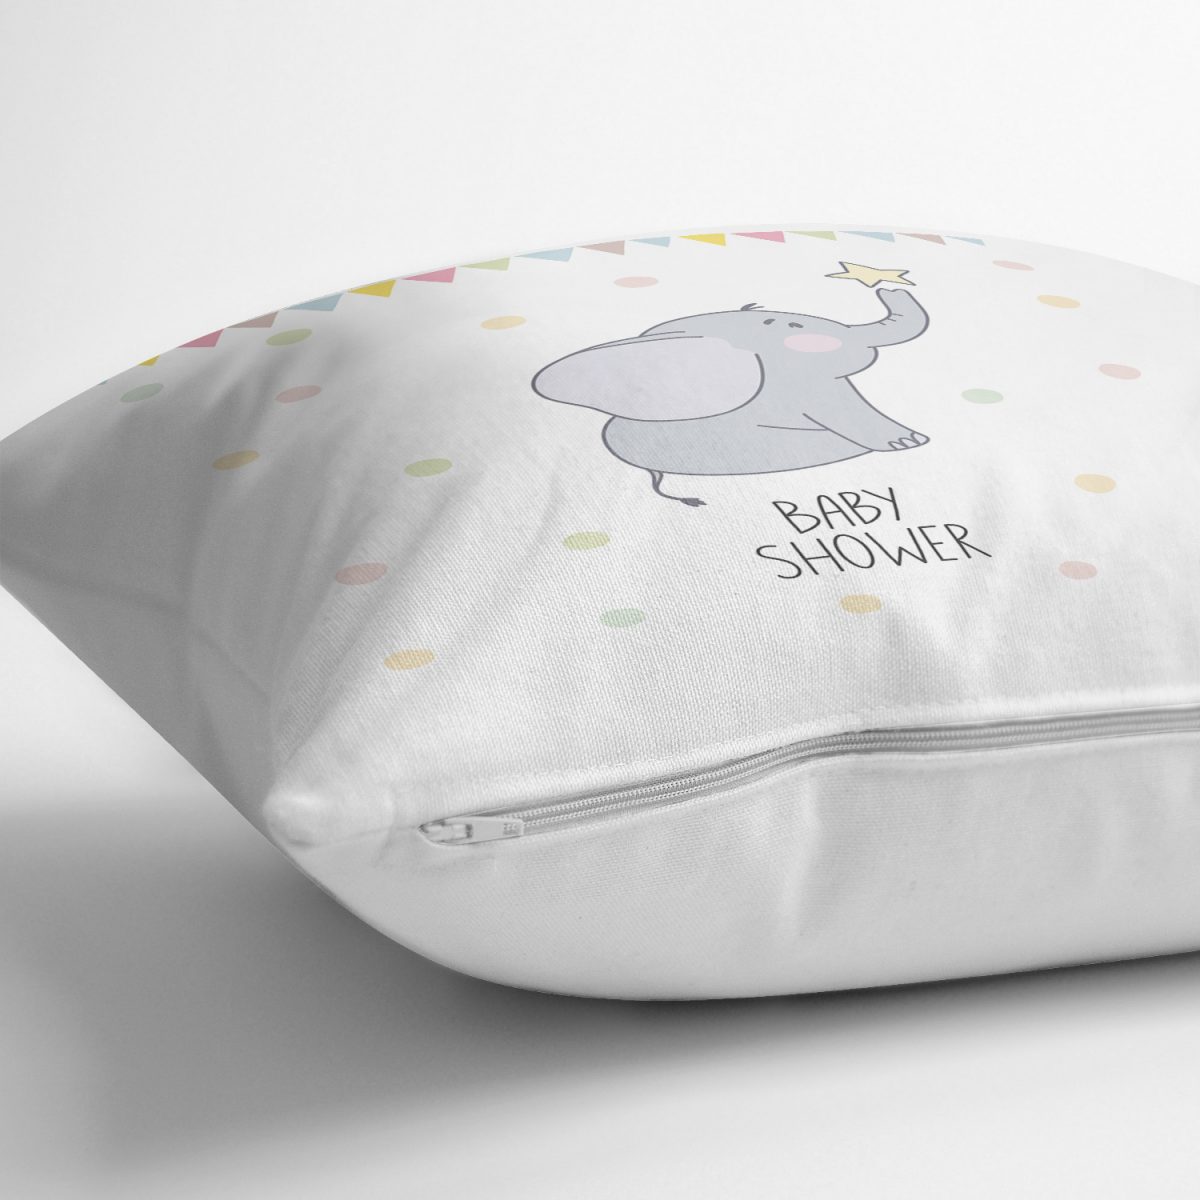 Sevimli Fil Baby Shower Tasarımlı Çocuk Odası Yastık Kırlent Kılıfı Realhomes